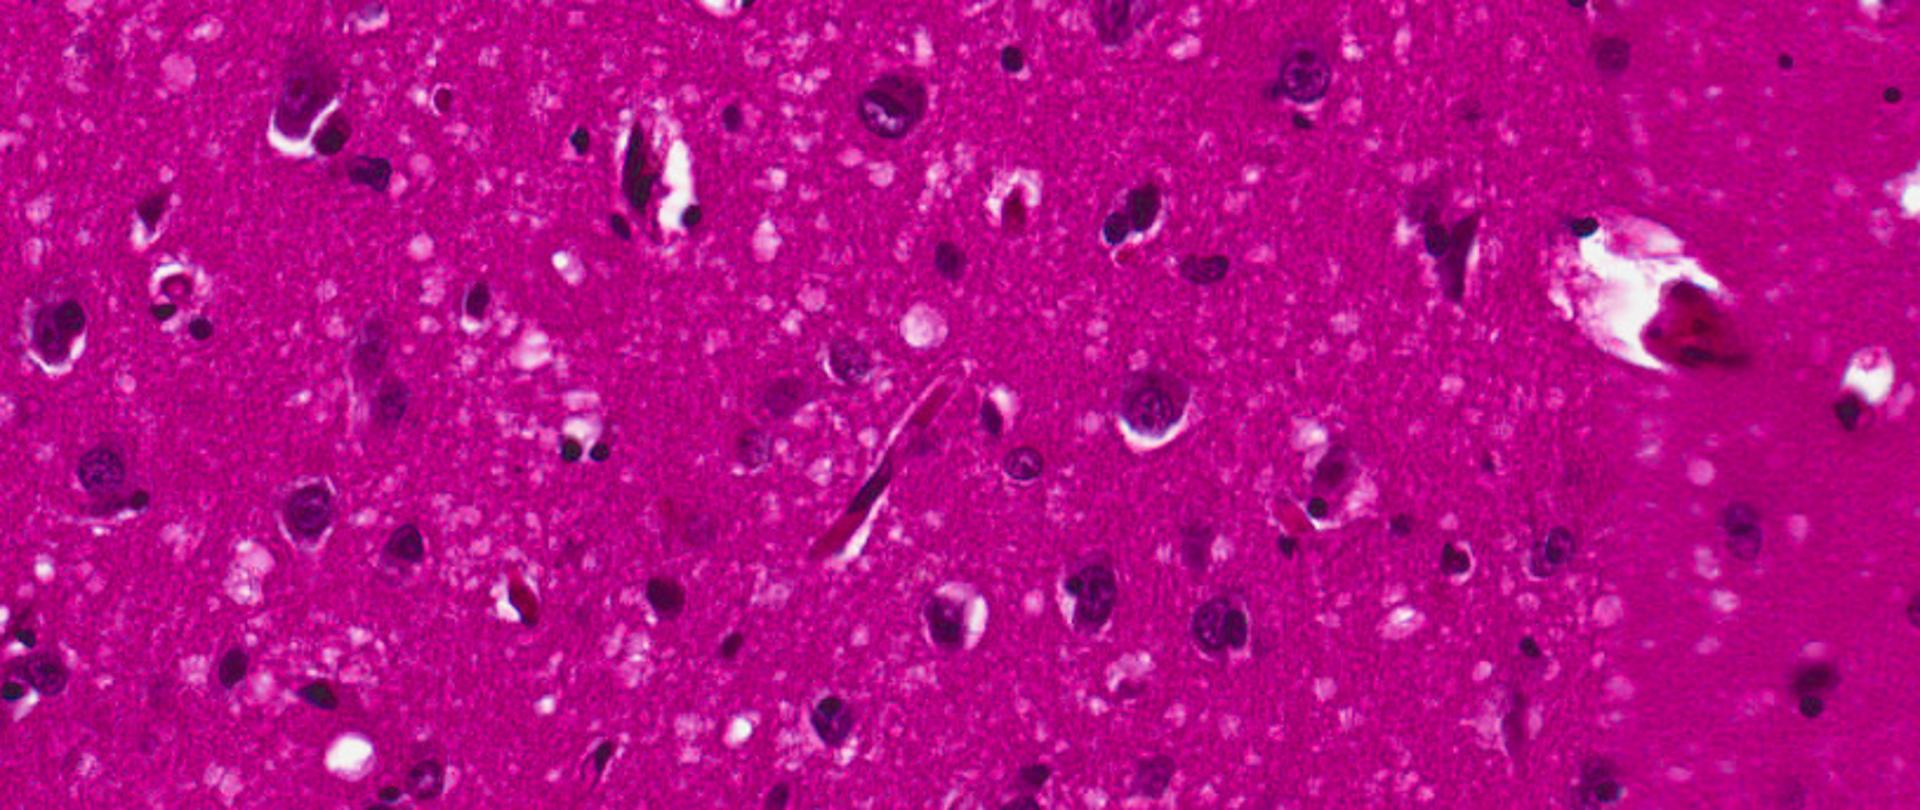 Choroba Creutzfeldta-Jacoba (CJD) jest rzadko występującą, śmiertelną chorobą ośrodkowego układu nerwowego. Zaliczana jest do tzw. pasażowalnych (zakaźnych) encefalopatii gąbczastych. Choroba ta występuje najczęściej pomiędzy 50, a 70 rokiem życia.